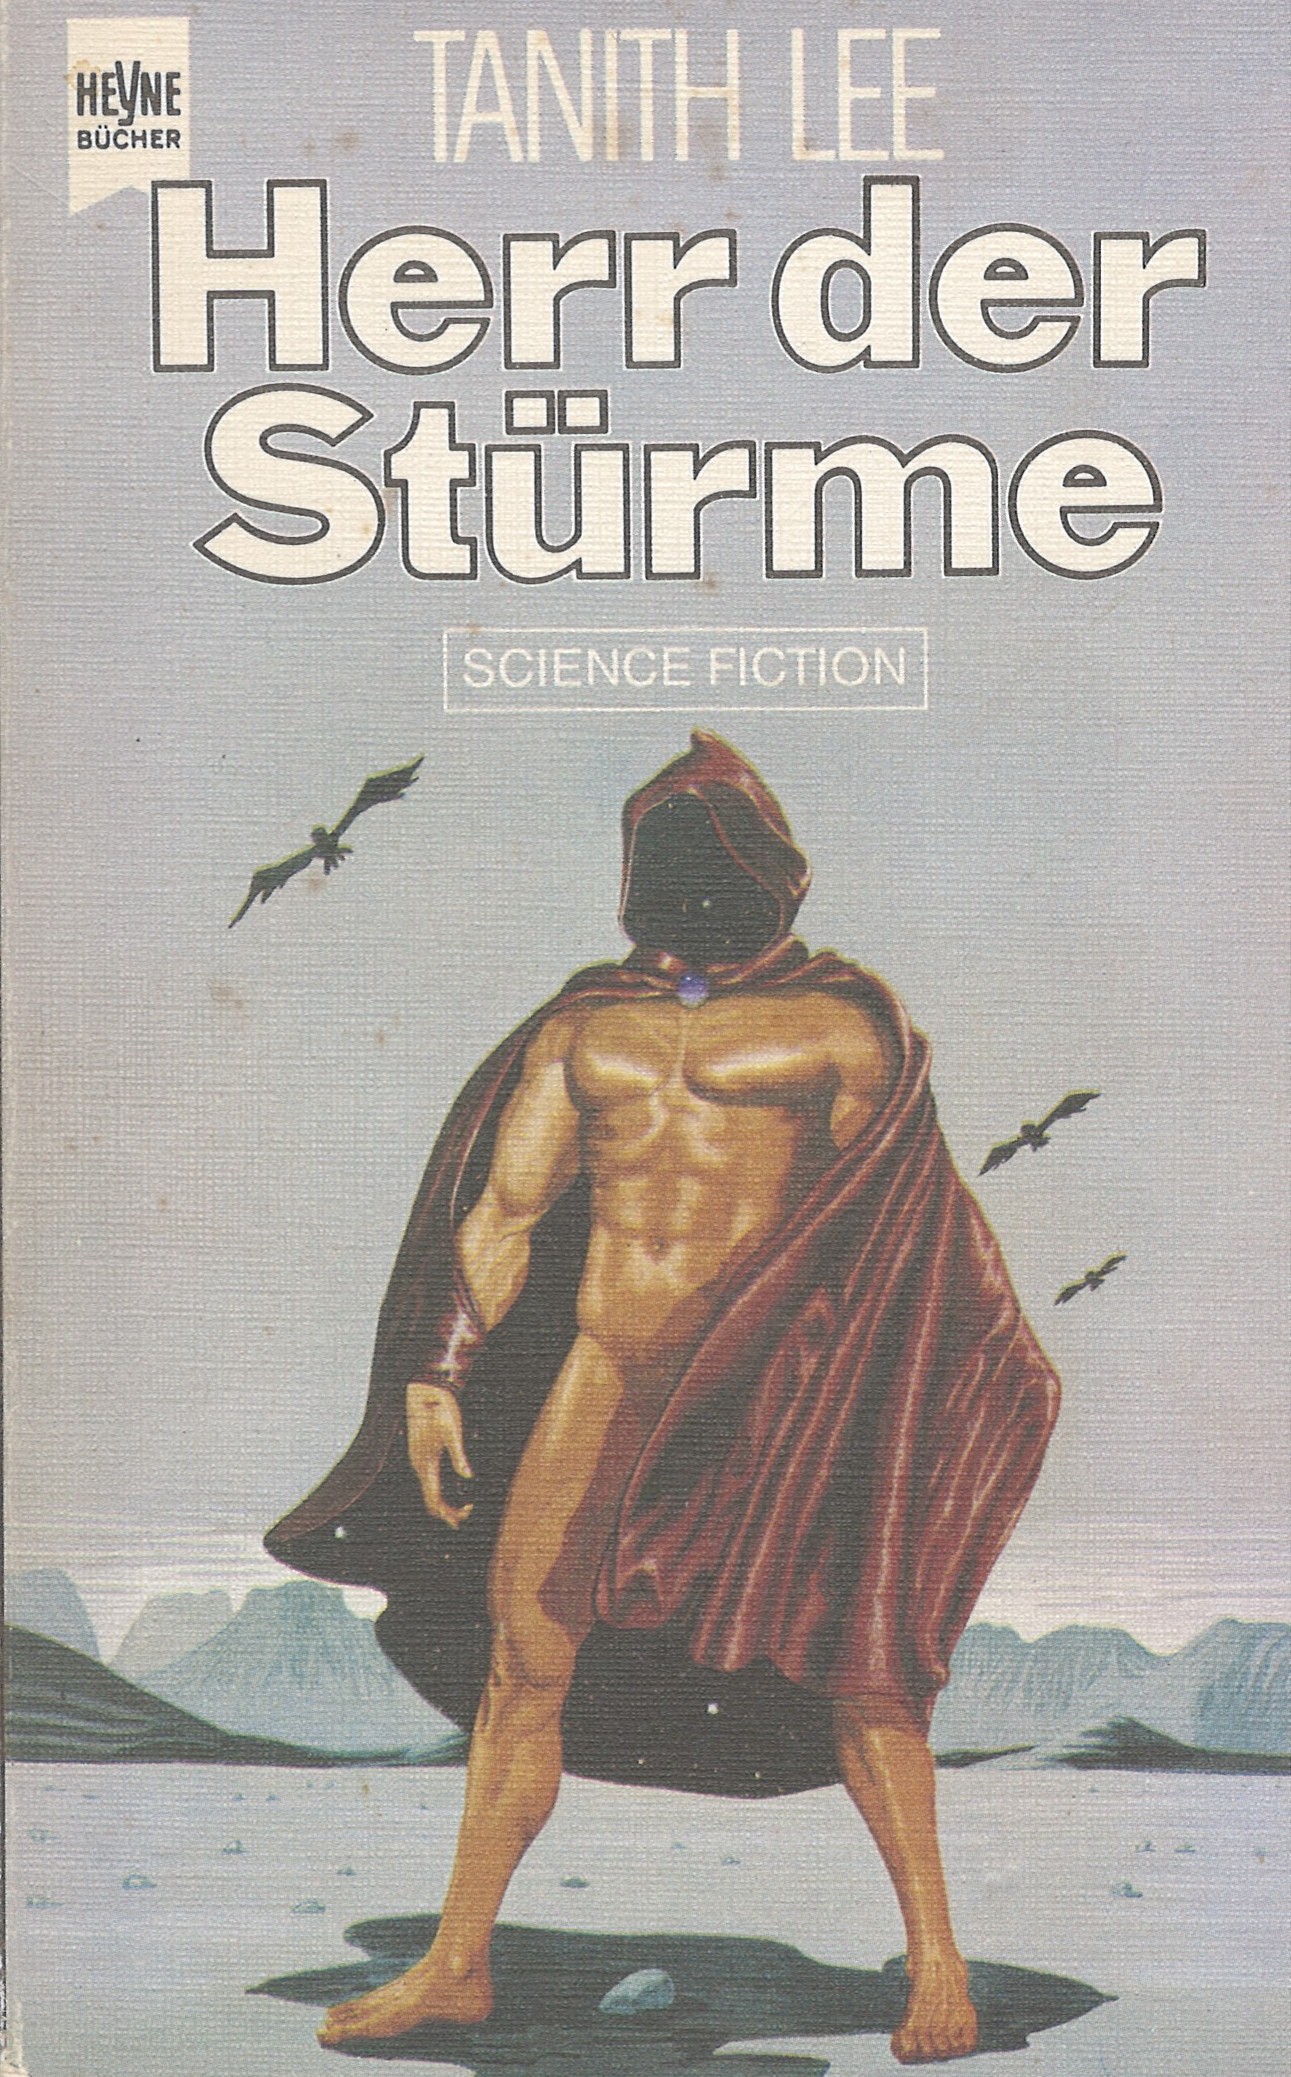 Herr Der Strmes <br>(The Storm Lord)